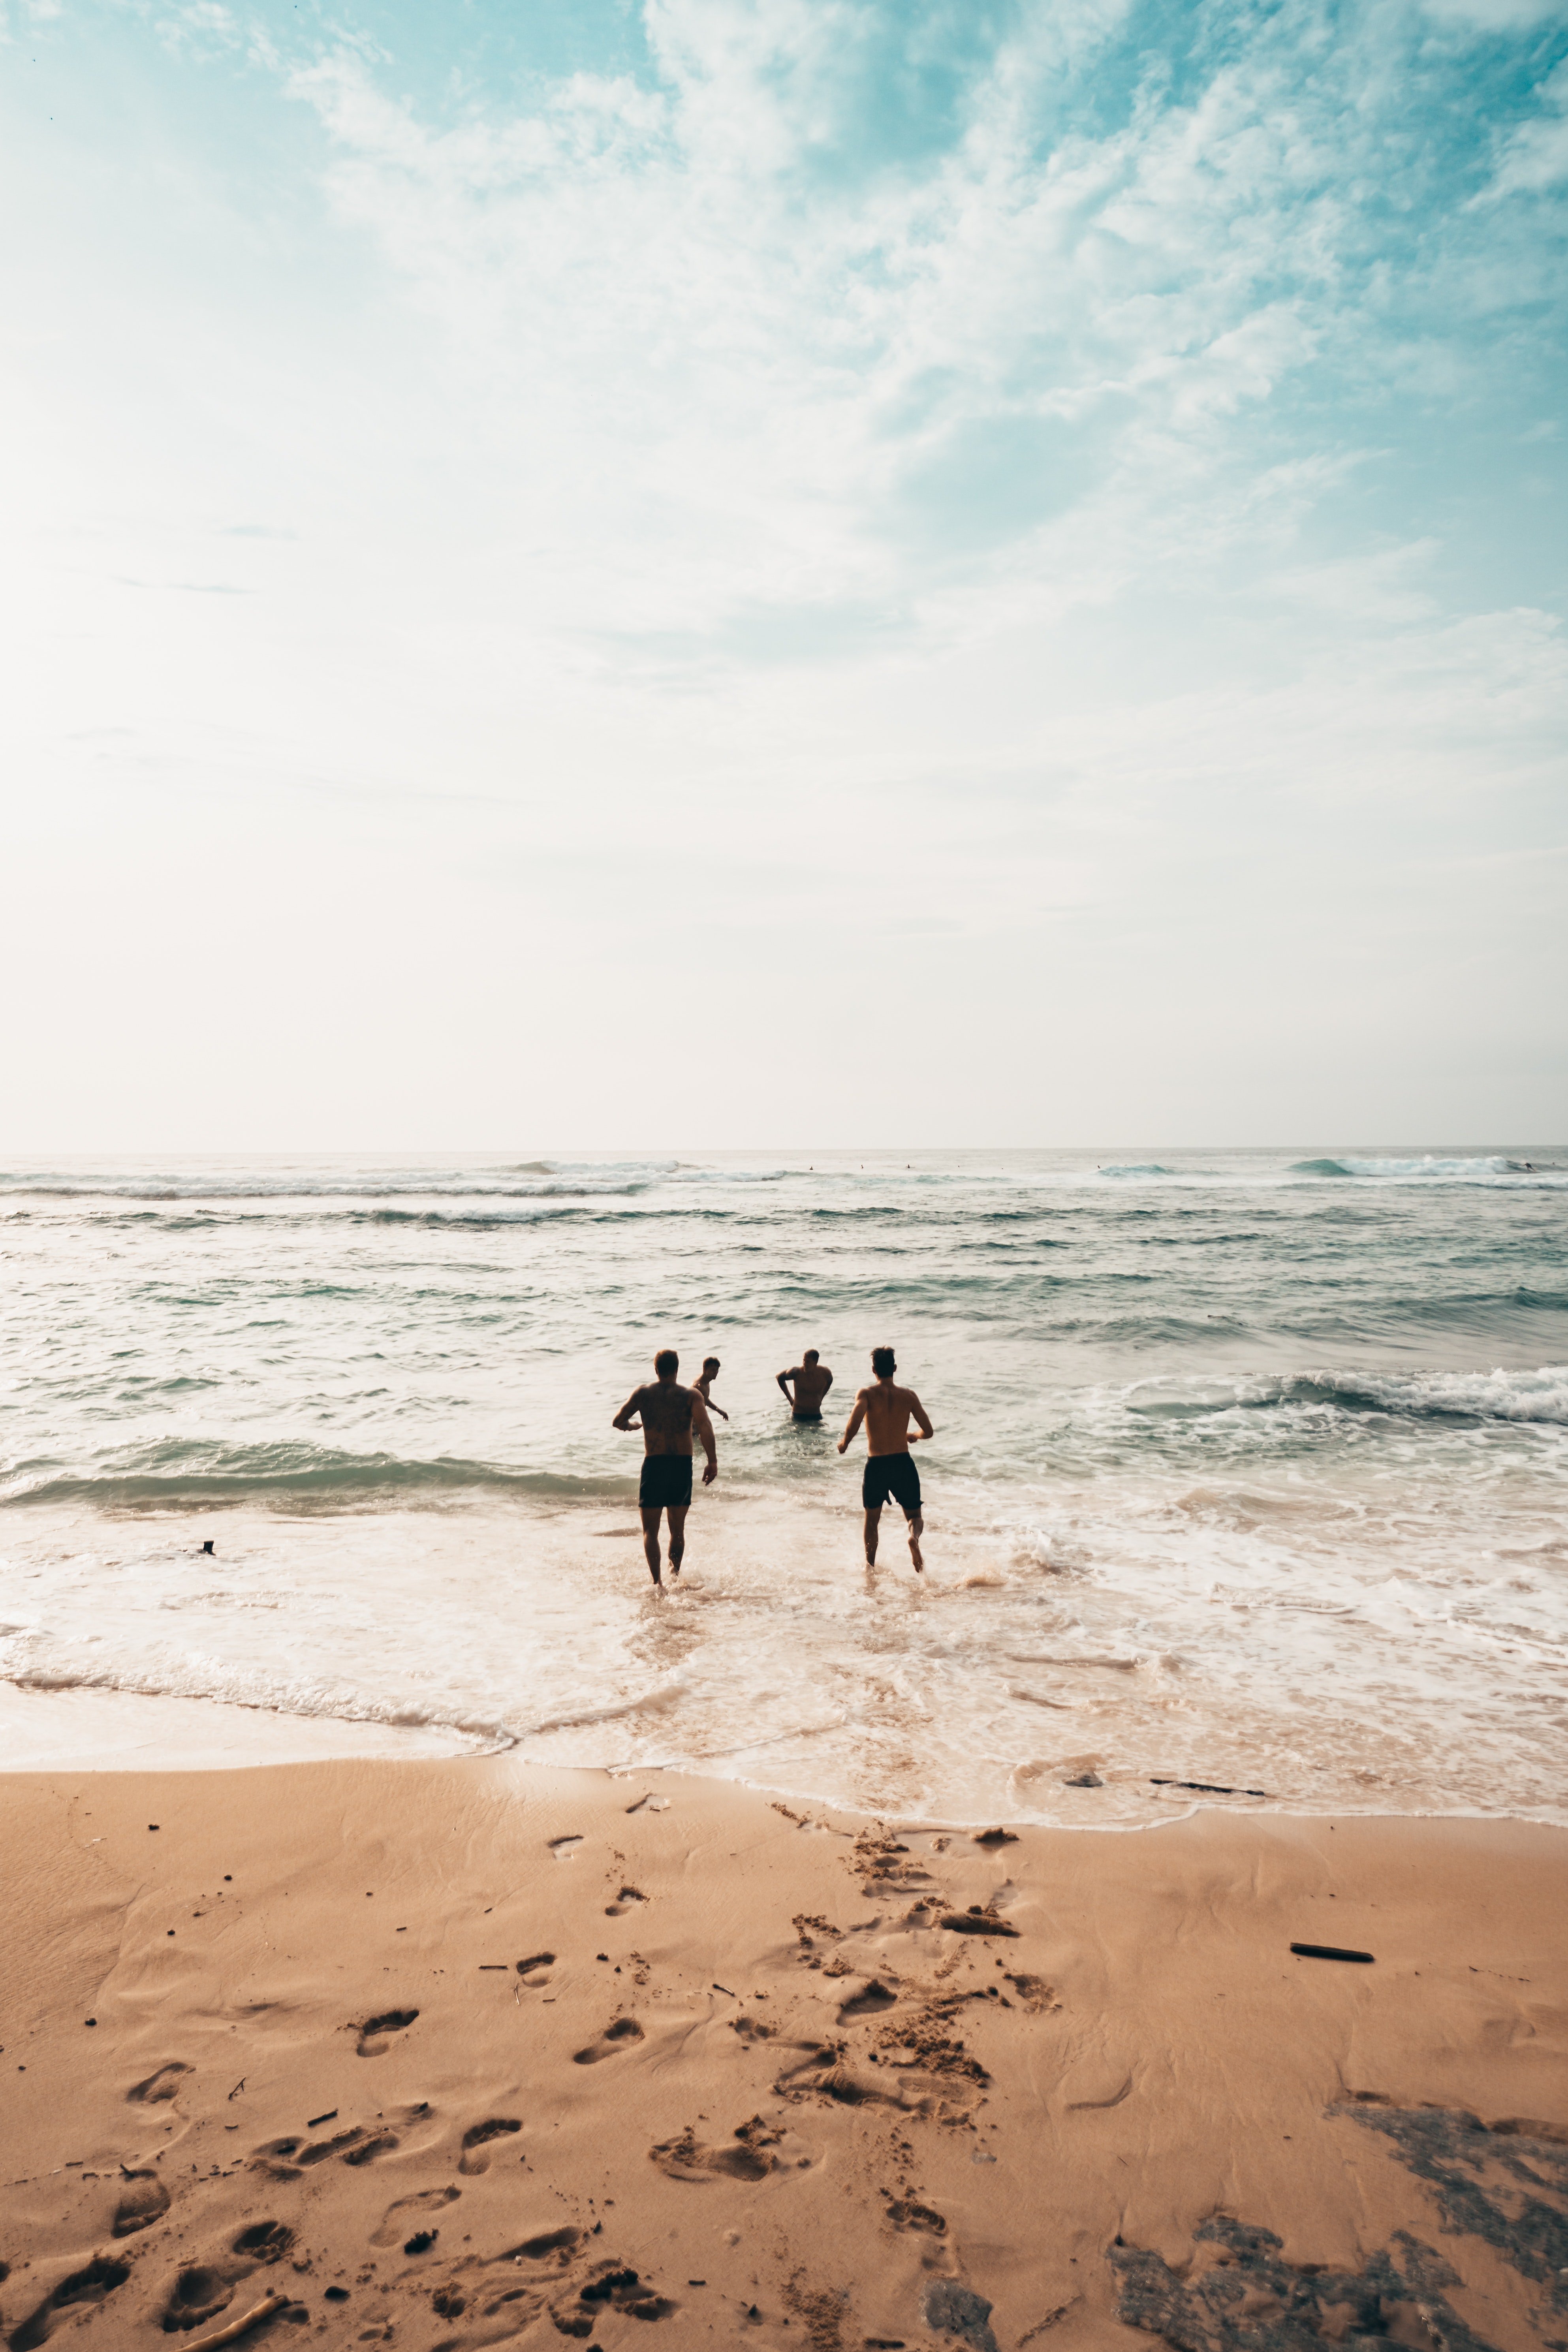 Eine Gruppe von Männern am Strand | Quelle: Pixabay